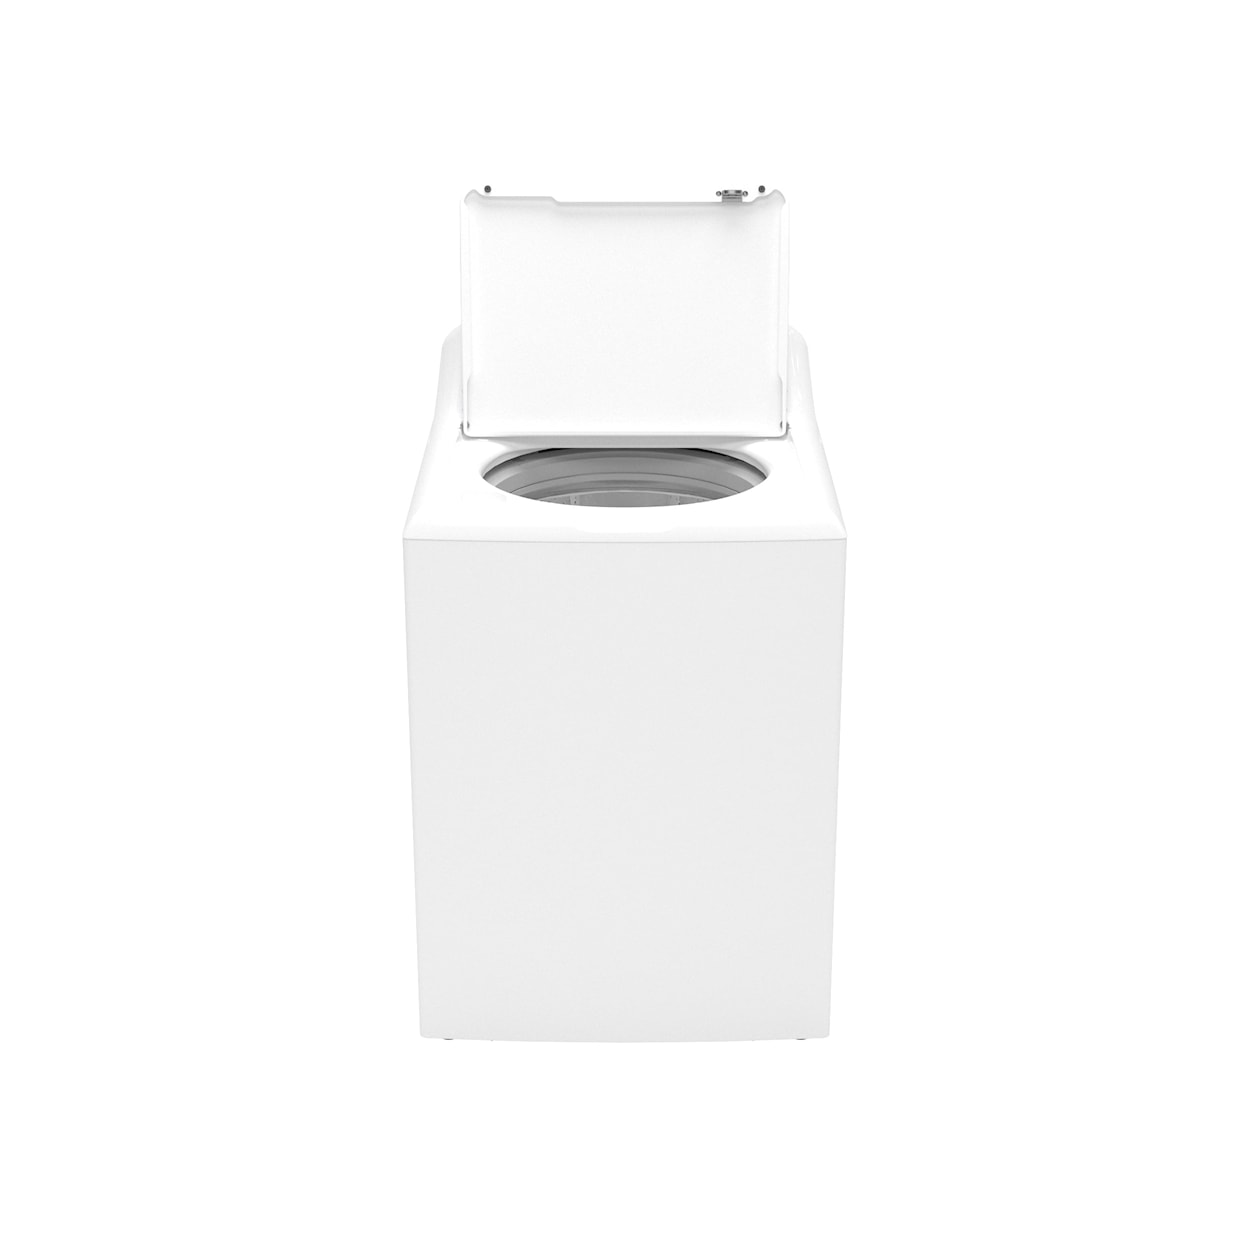 Hotpoint Laundry 4.0 CF Washer